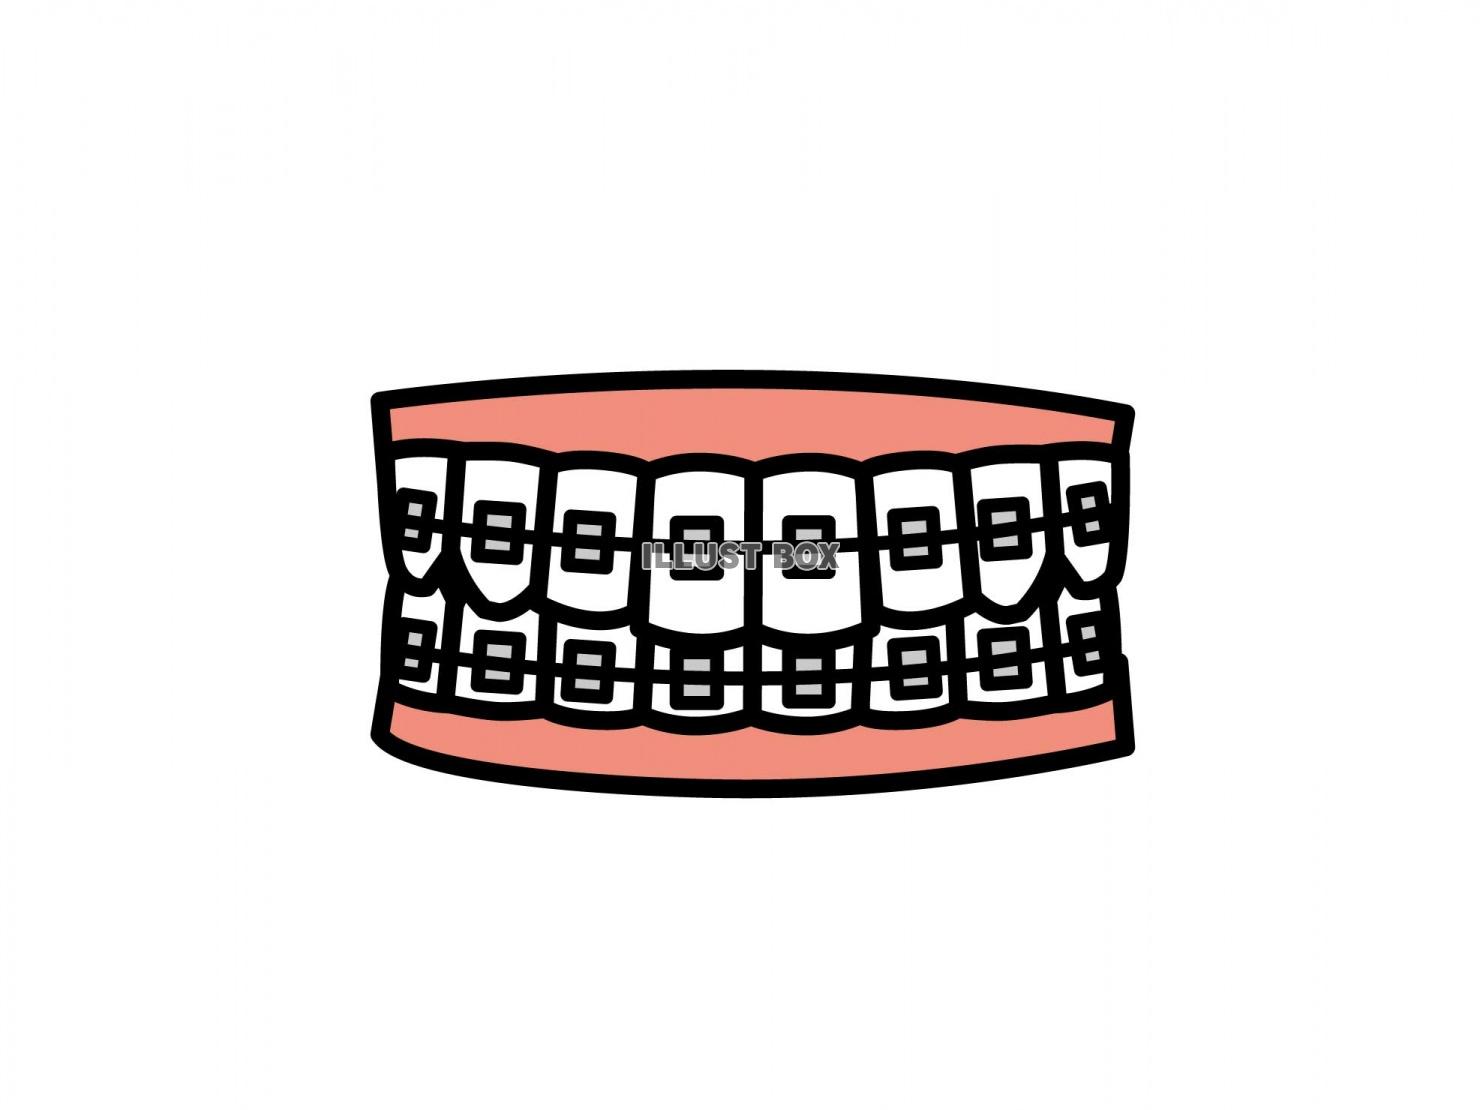 歯列矯正のイラスト